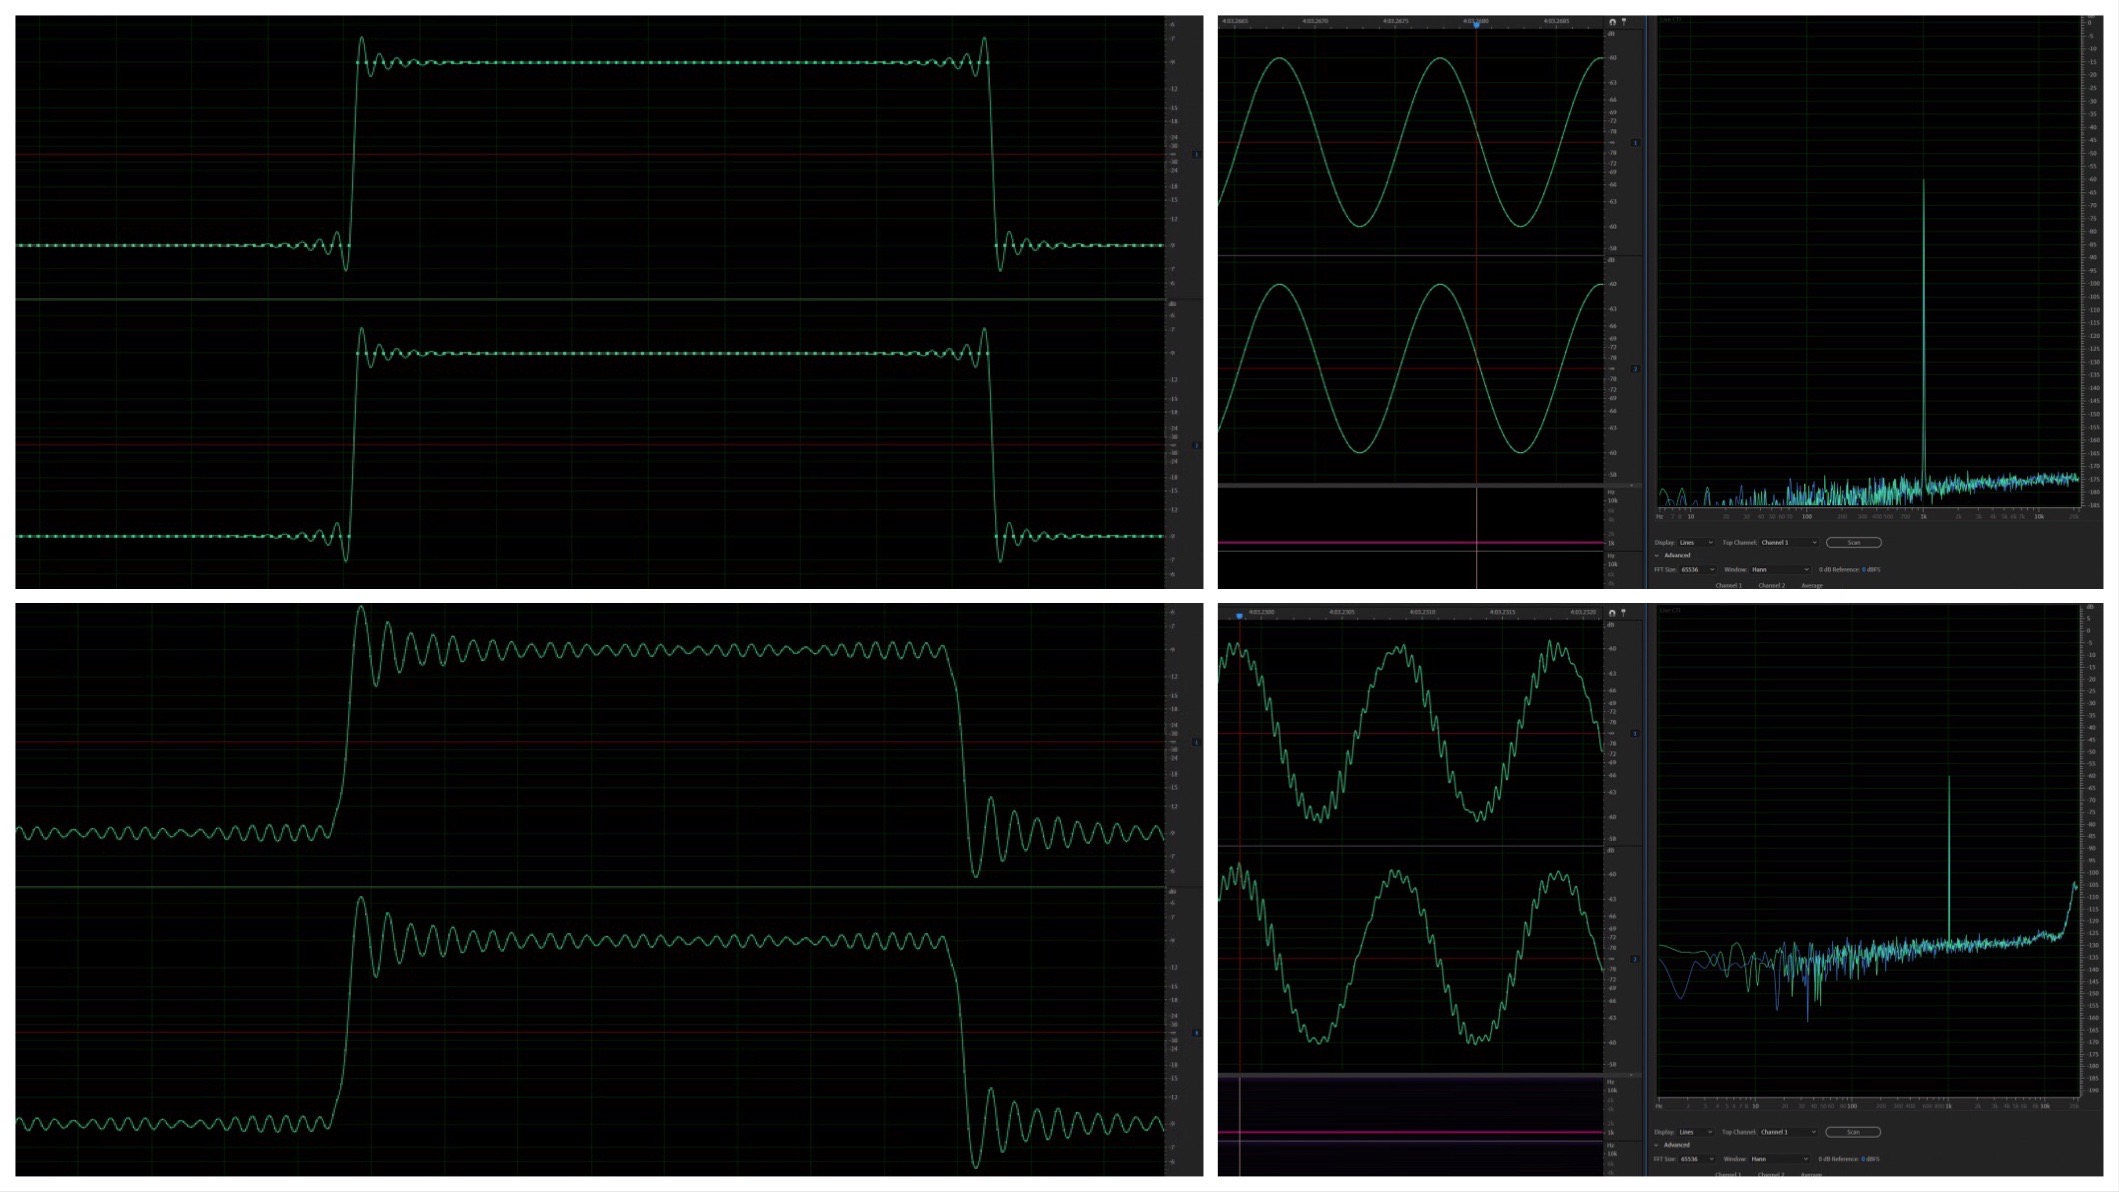 Így módosítja a hanghullámokat az MQA-konverzió: a fenti képeken láthatók az eredeti négyszögjelek és színuszhullámok, az alsón pedig az MQA-kezelésen átesett változat. Egyikük sem minőségjavulásról árulkodik.